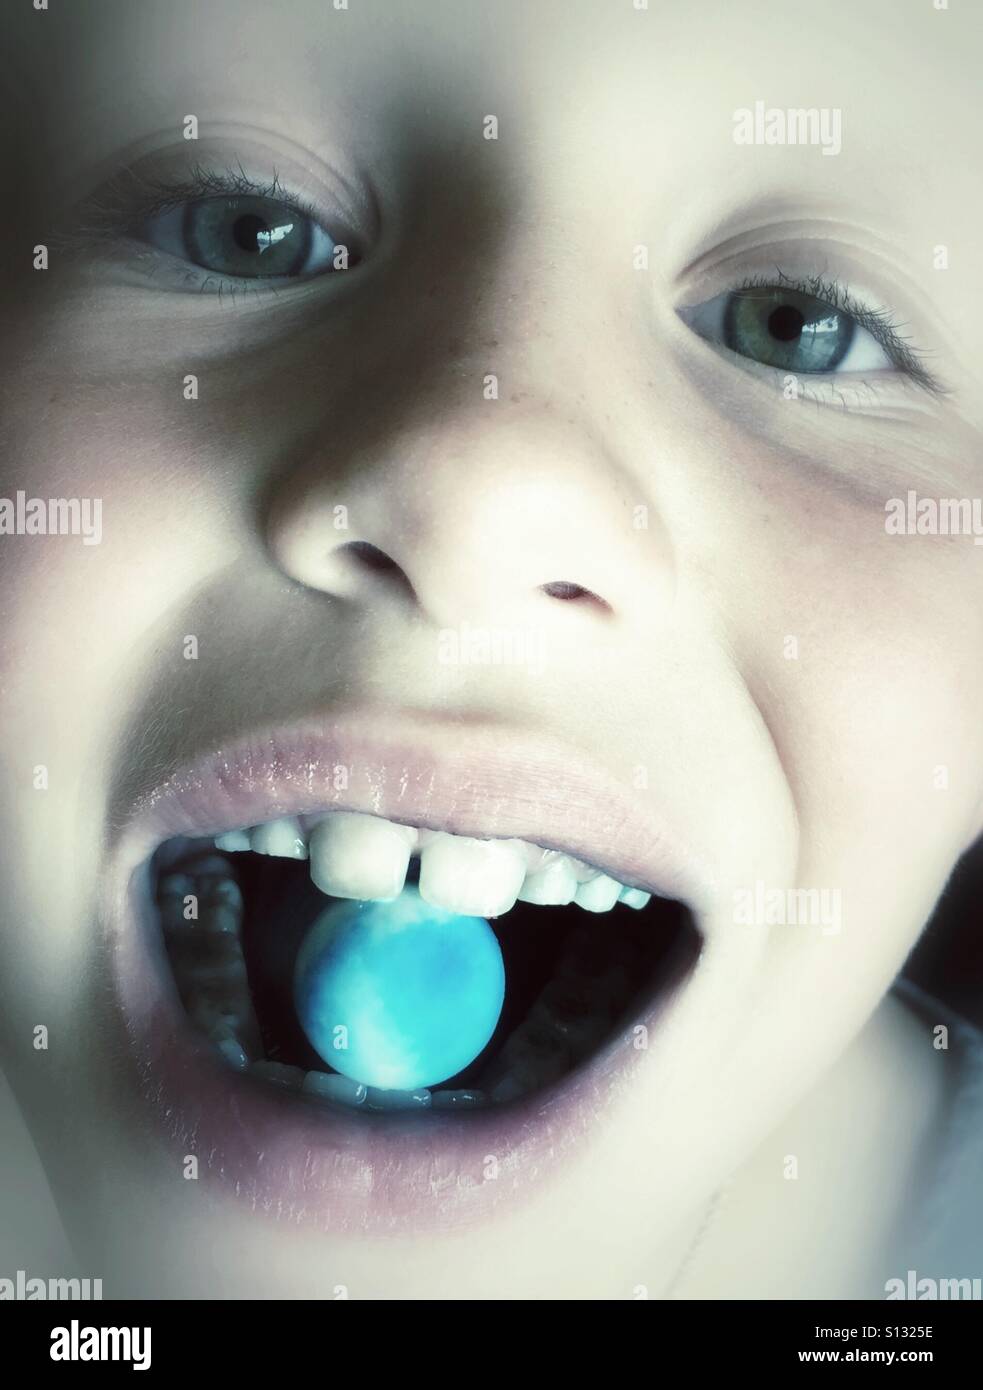 Eine Nahaufnahme eines Kindes mit einer blauen Gumball im Maul. Stockfoto